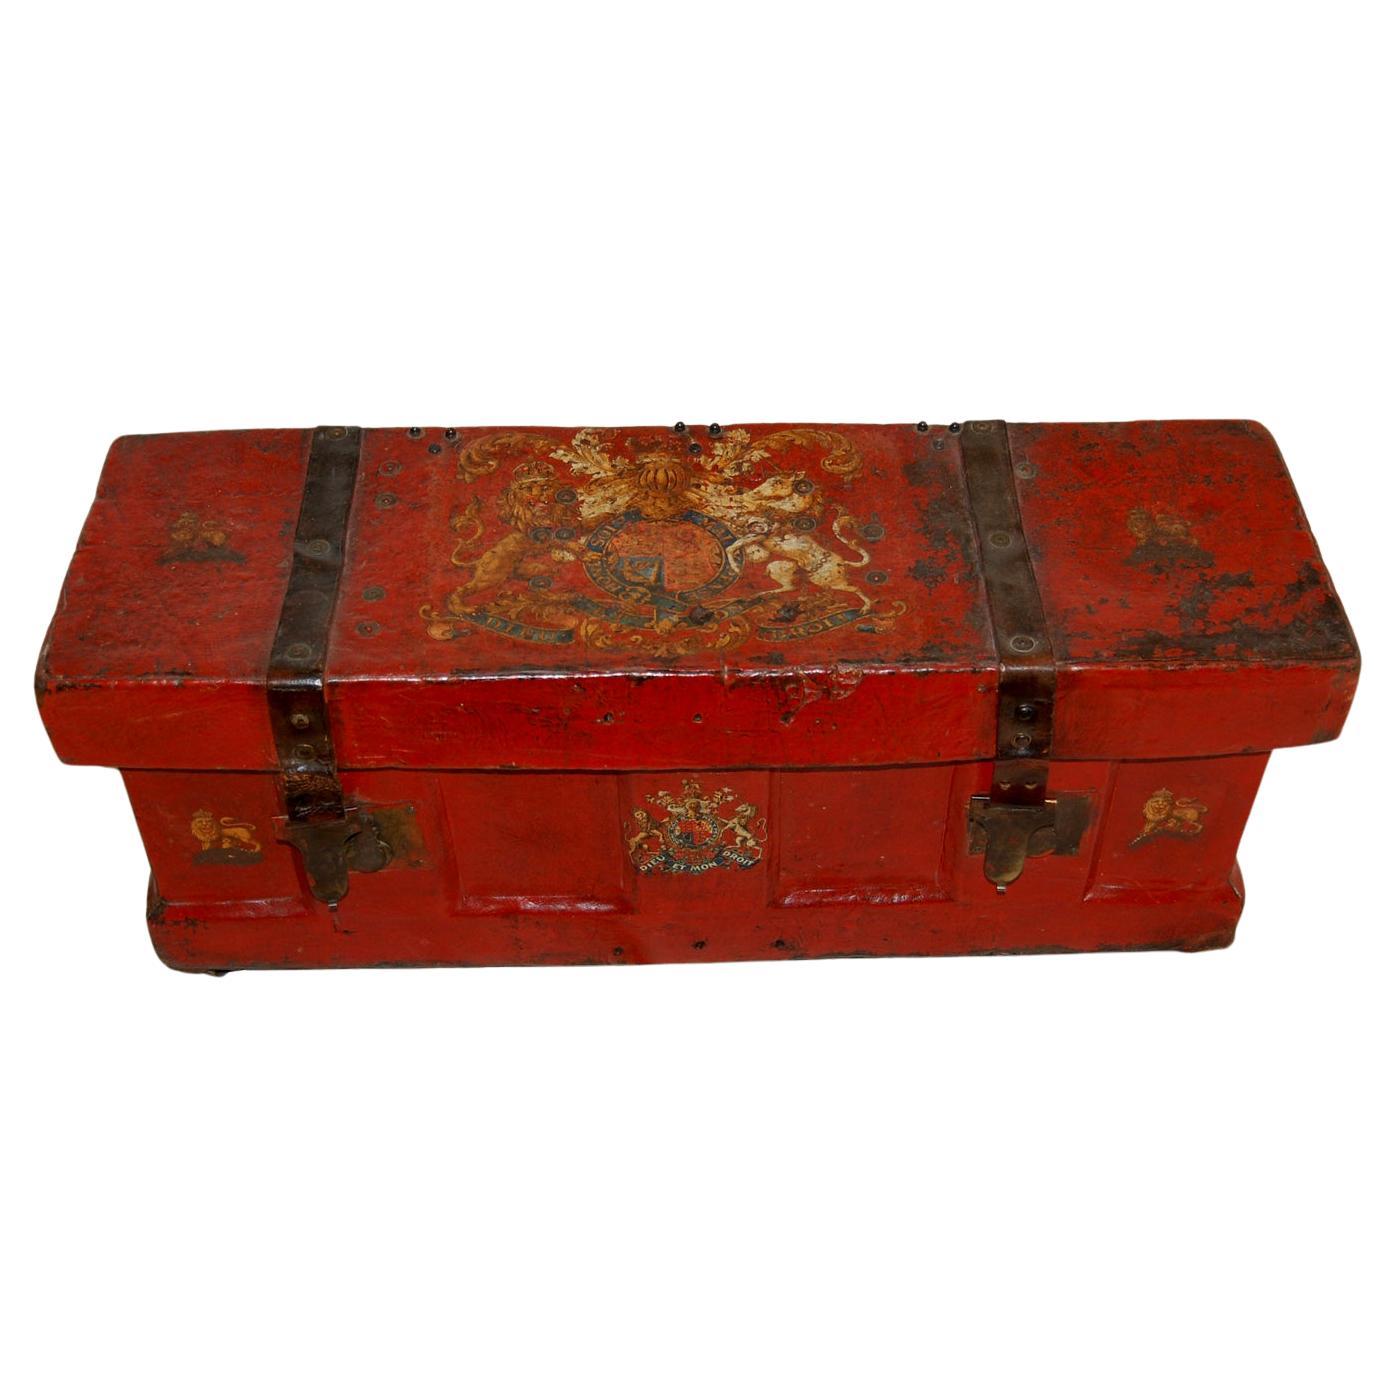 Boîte à munitions militaire anglaise du milieu du 19e siècle avec médaillons royaux, armoiries